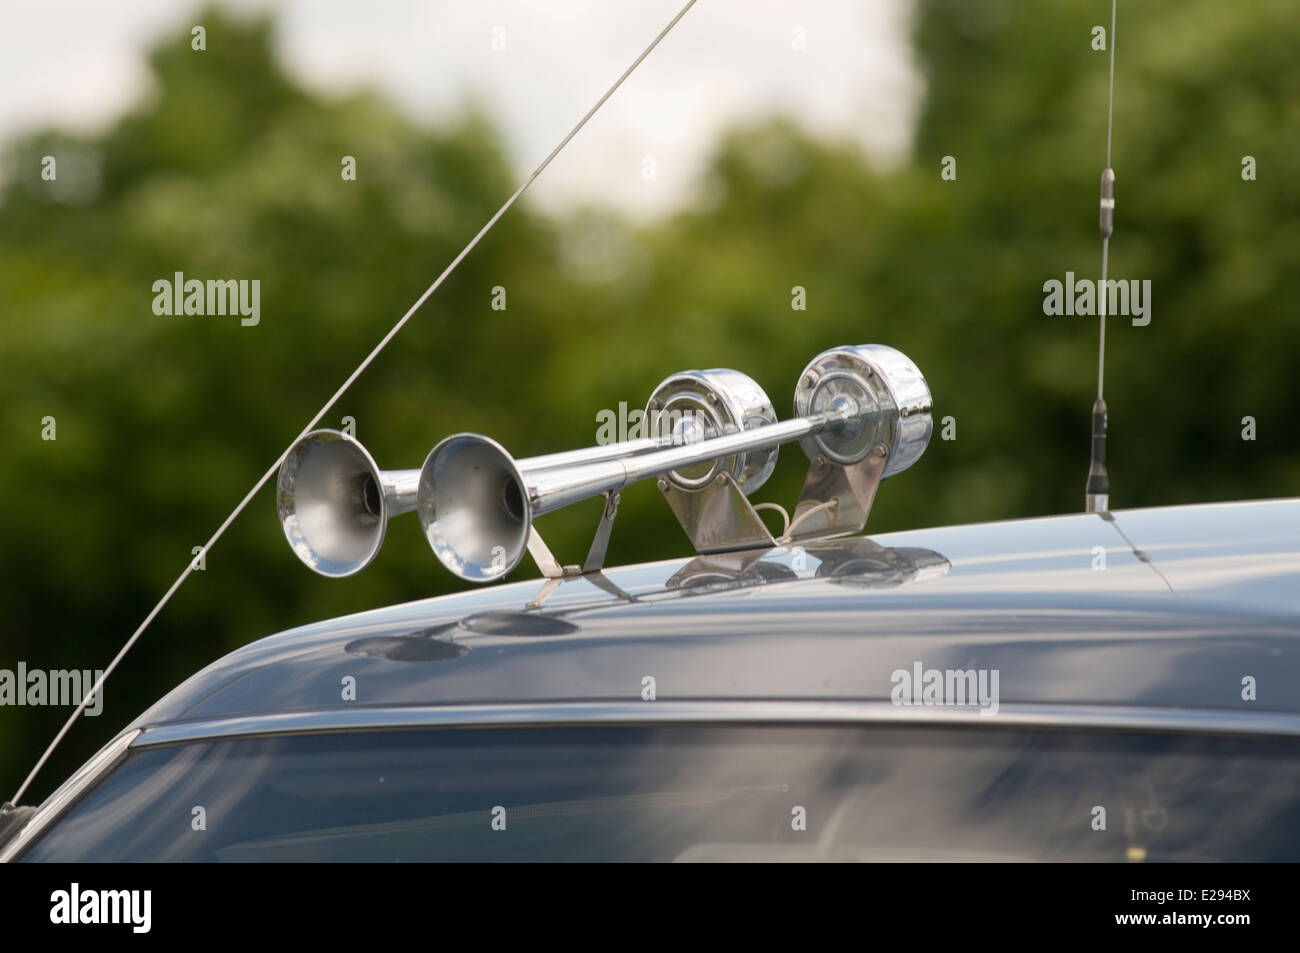 car horn' -Fotos und -Bildmaterial in hoher Auflösung - Seite 2